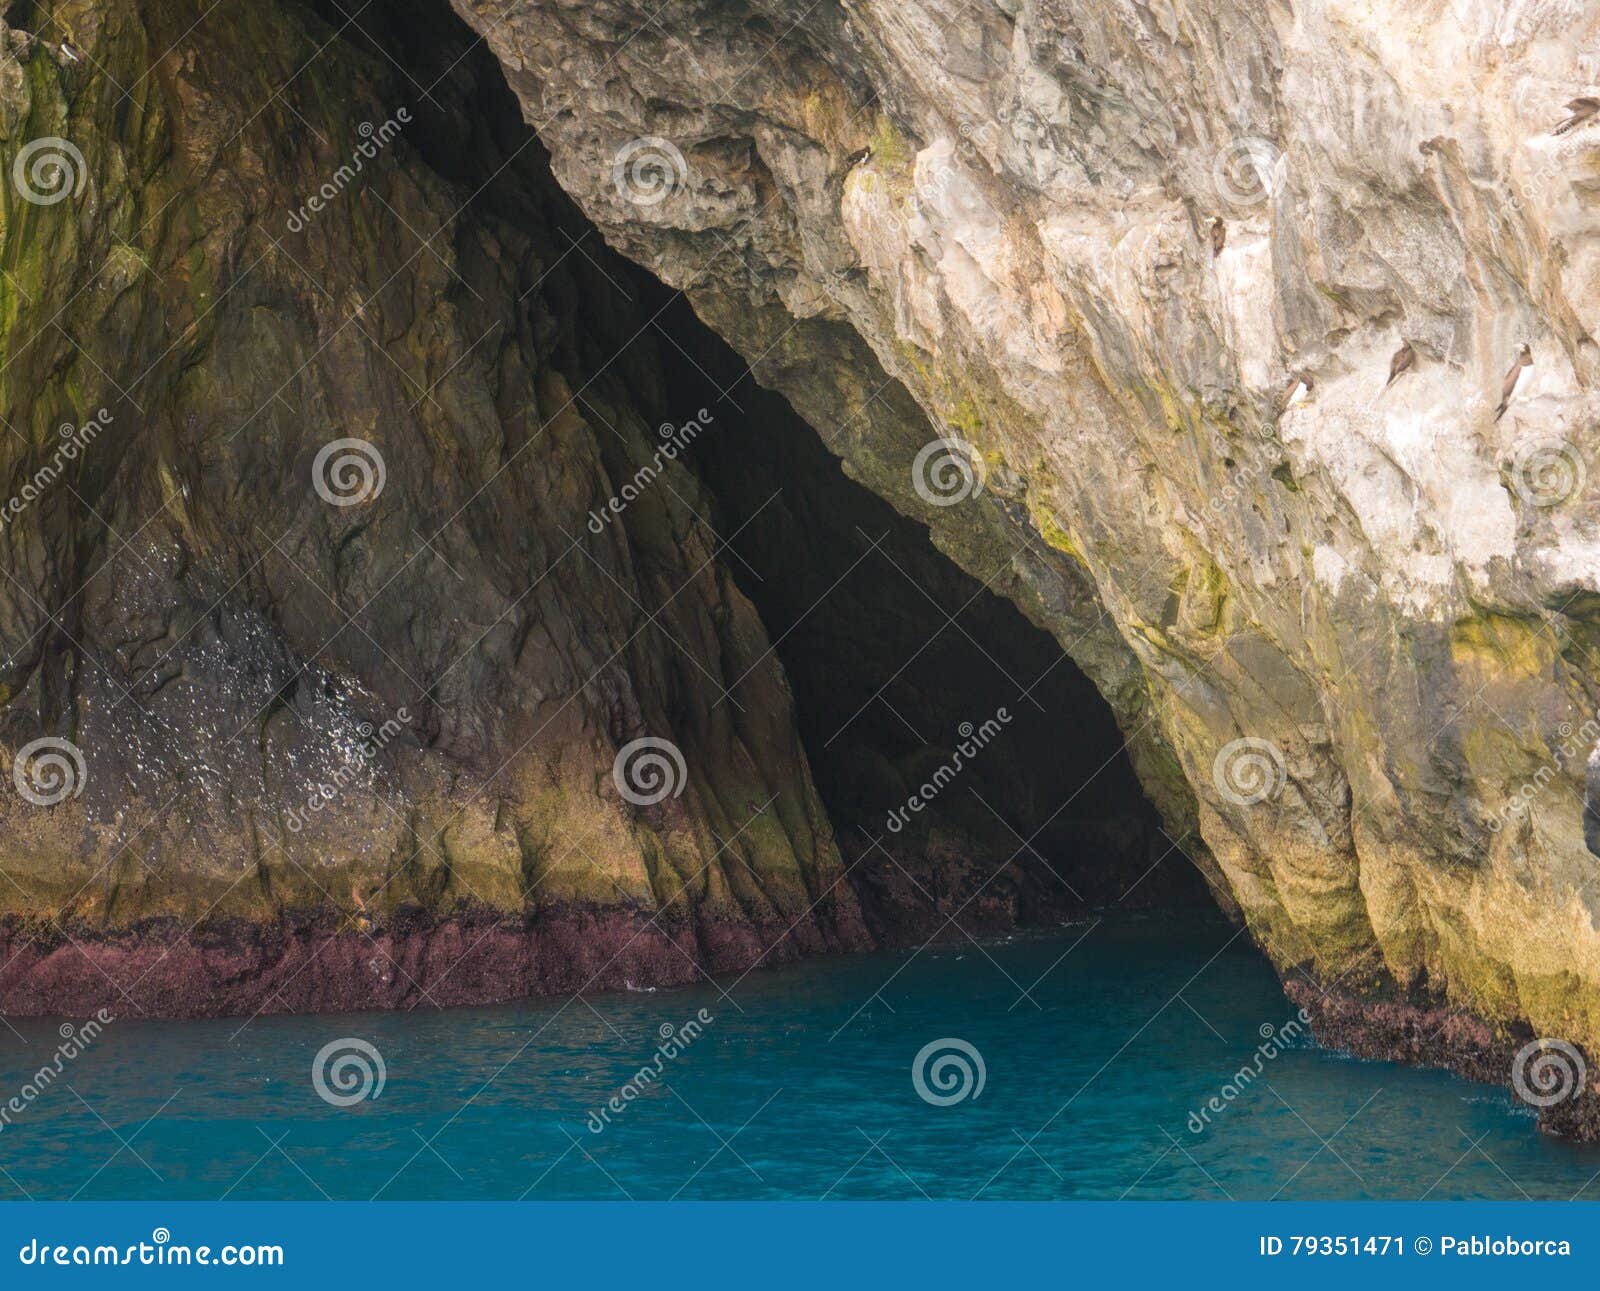 arraial do cabo, blue grotto